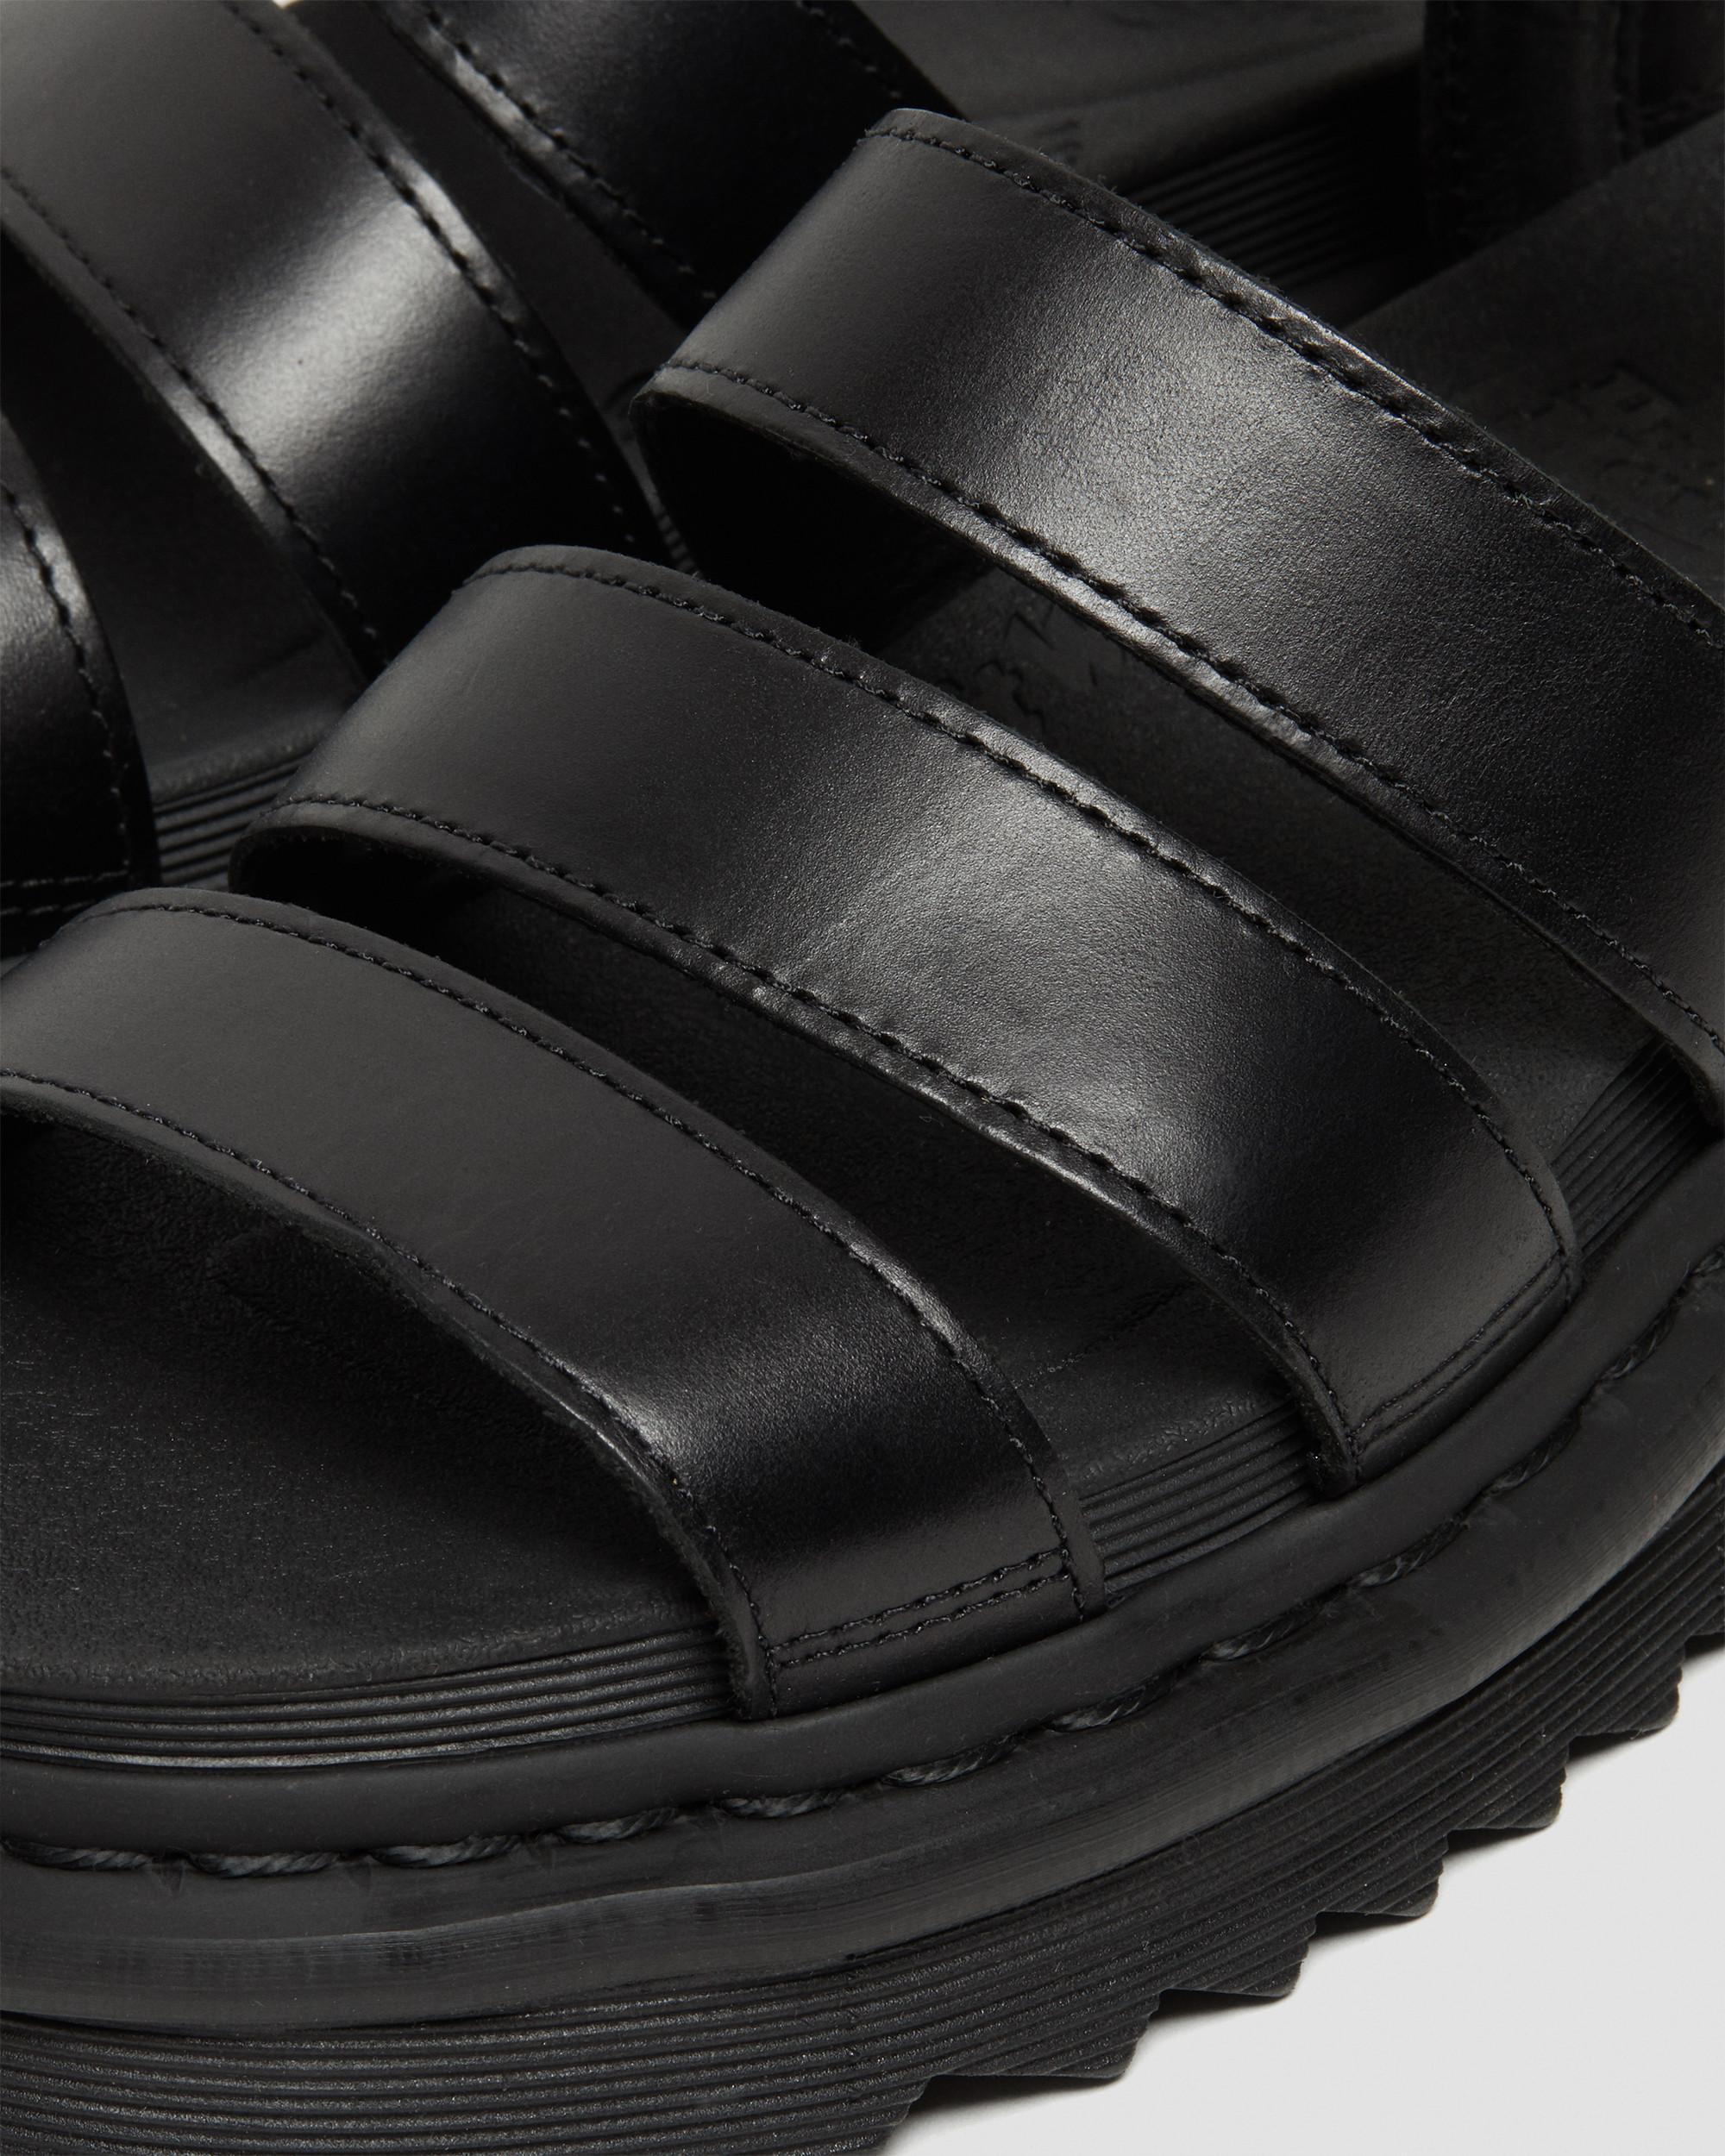 erindringsmønter Tilhører Aggressiv Blaire Women's Brando Leather Strap Sandals | Dr. Martens